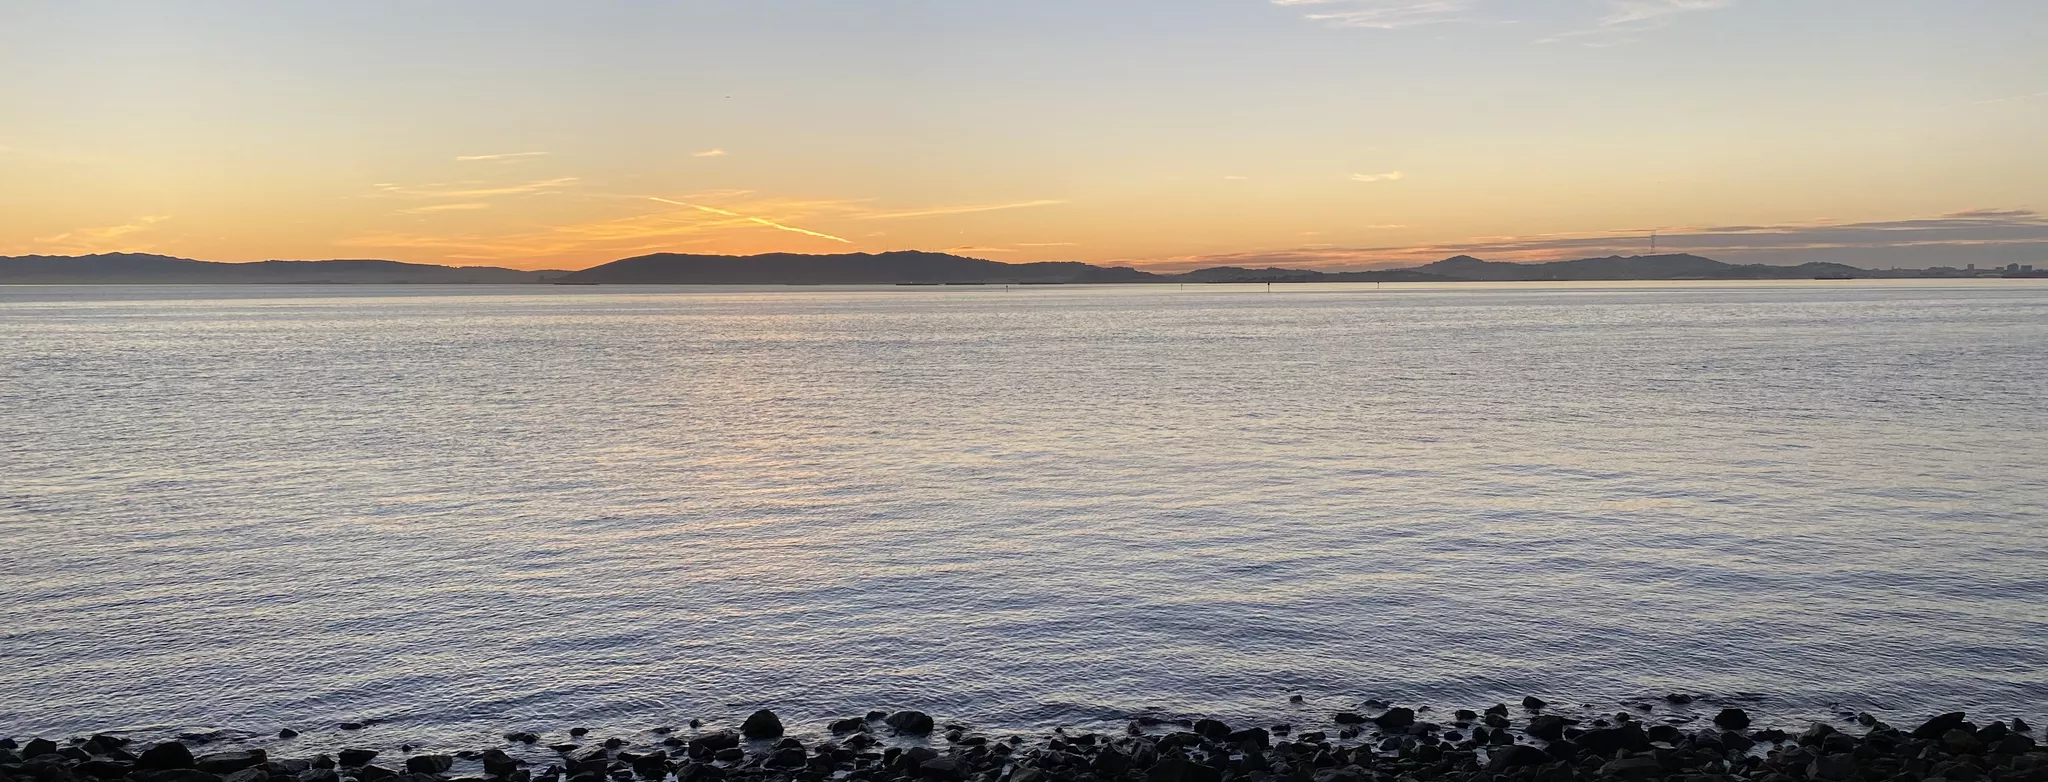 Photo of San Francisco Bay at Sunset